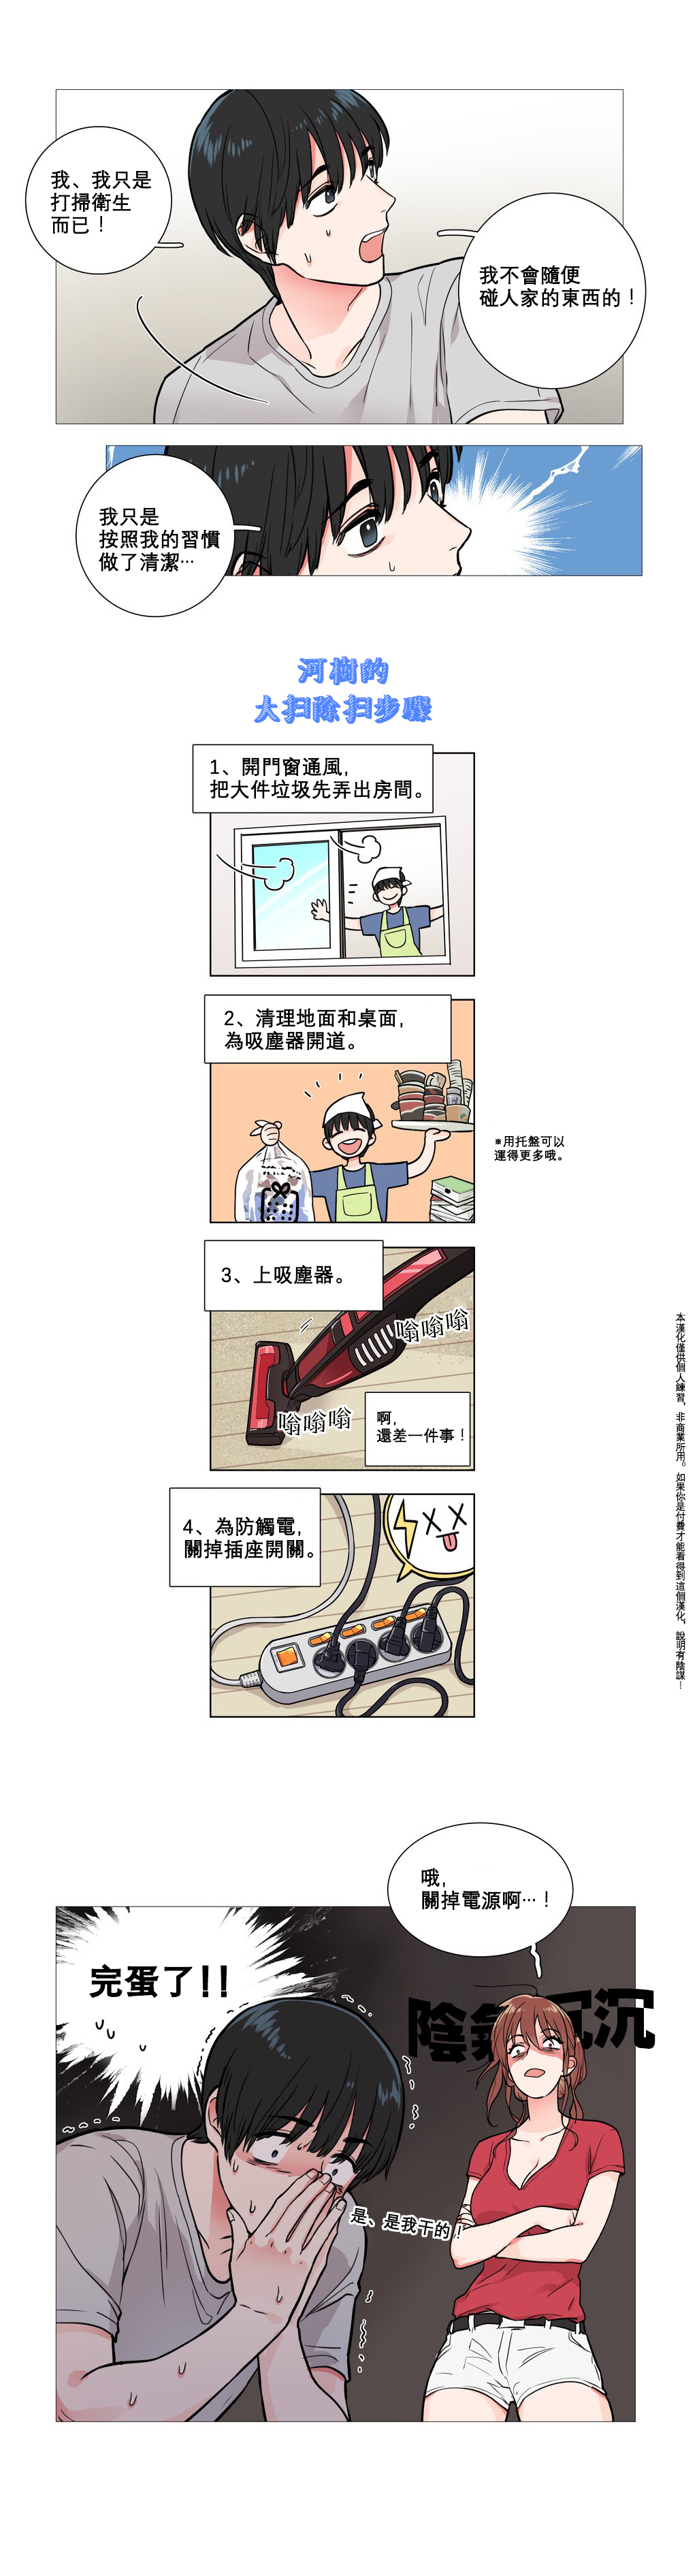 【神山】サディスティックビューティーCh.1-16【中国語】【17汉化】